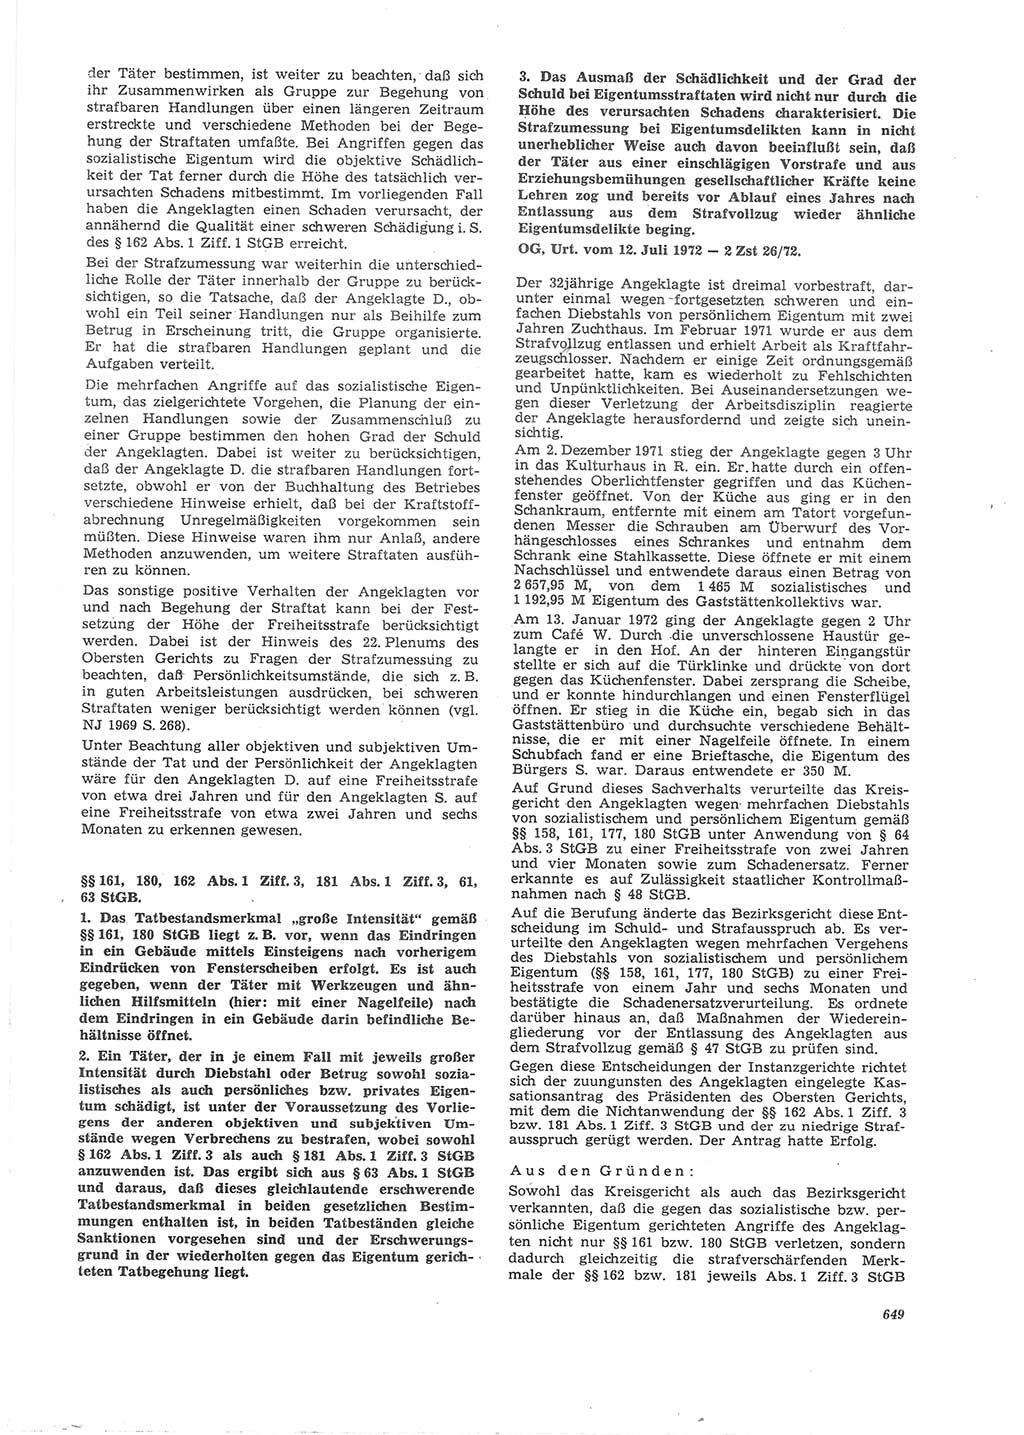 Neue Justiz (NJ), Zeitschrift für Recht und Rechtswissenschaft [Deutsche Demokratische Republik (DDR)], 26. Jahrgang 1972, Seite 649 (NJ DDR 1972, S. 649)